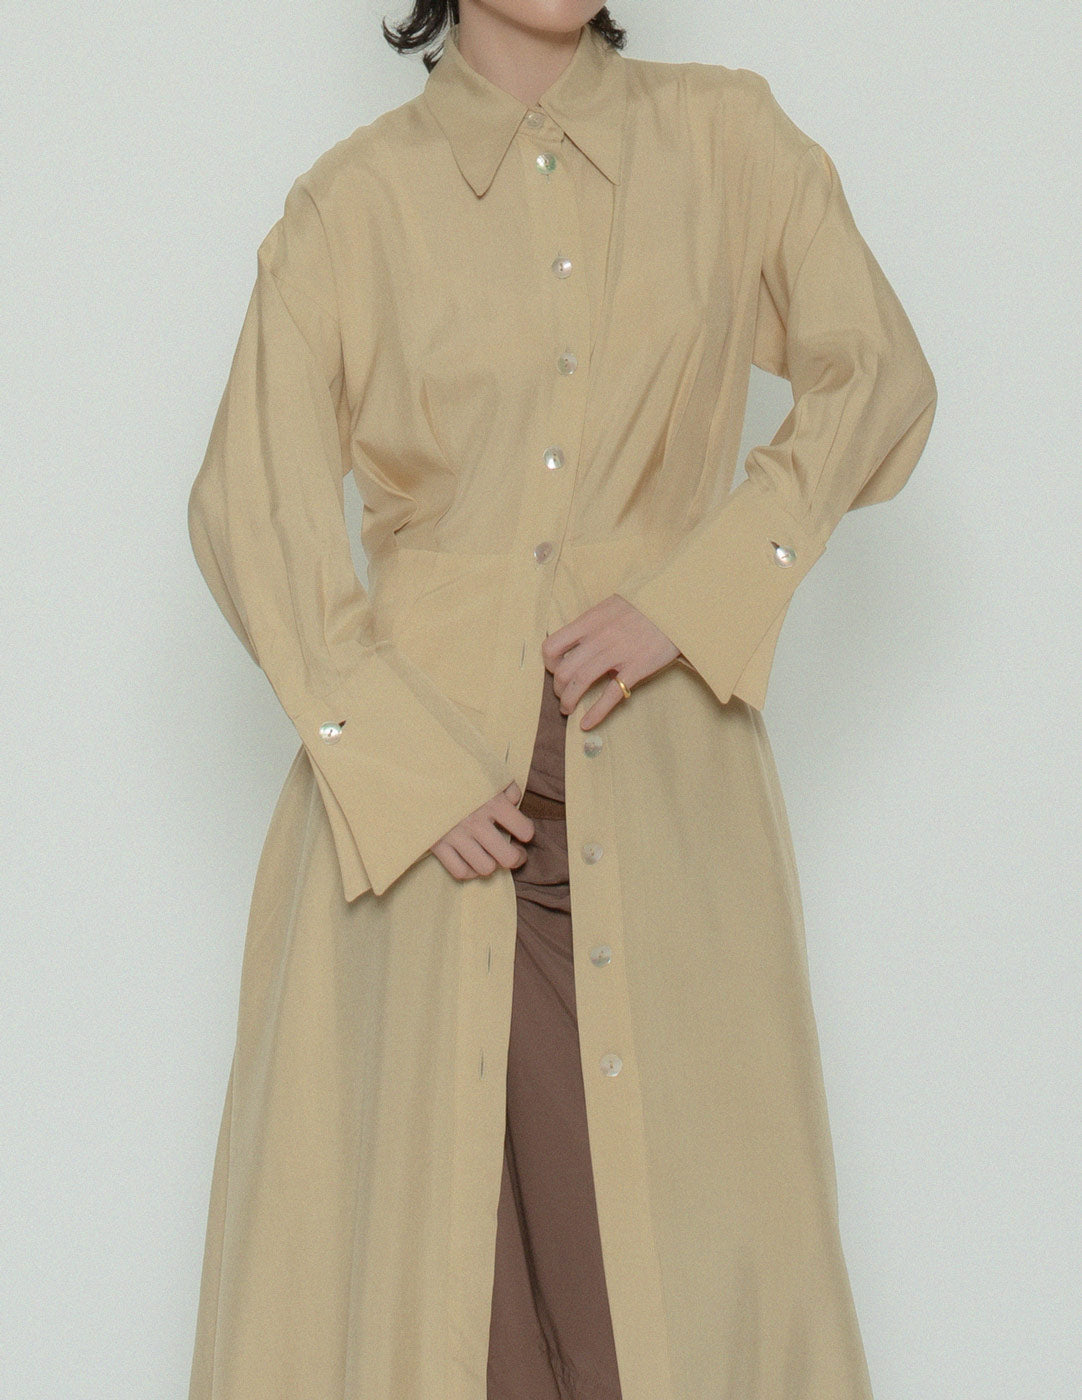 Emmanuelle Khanh vintage buttoned shirt dress front detail